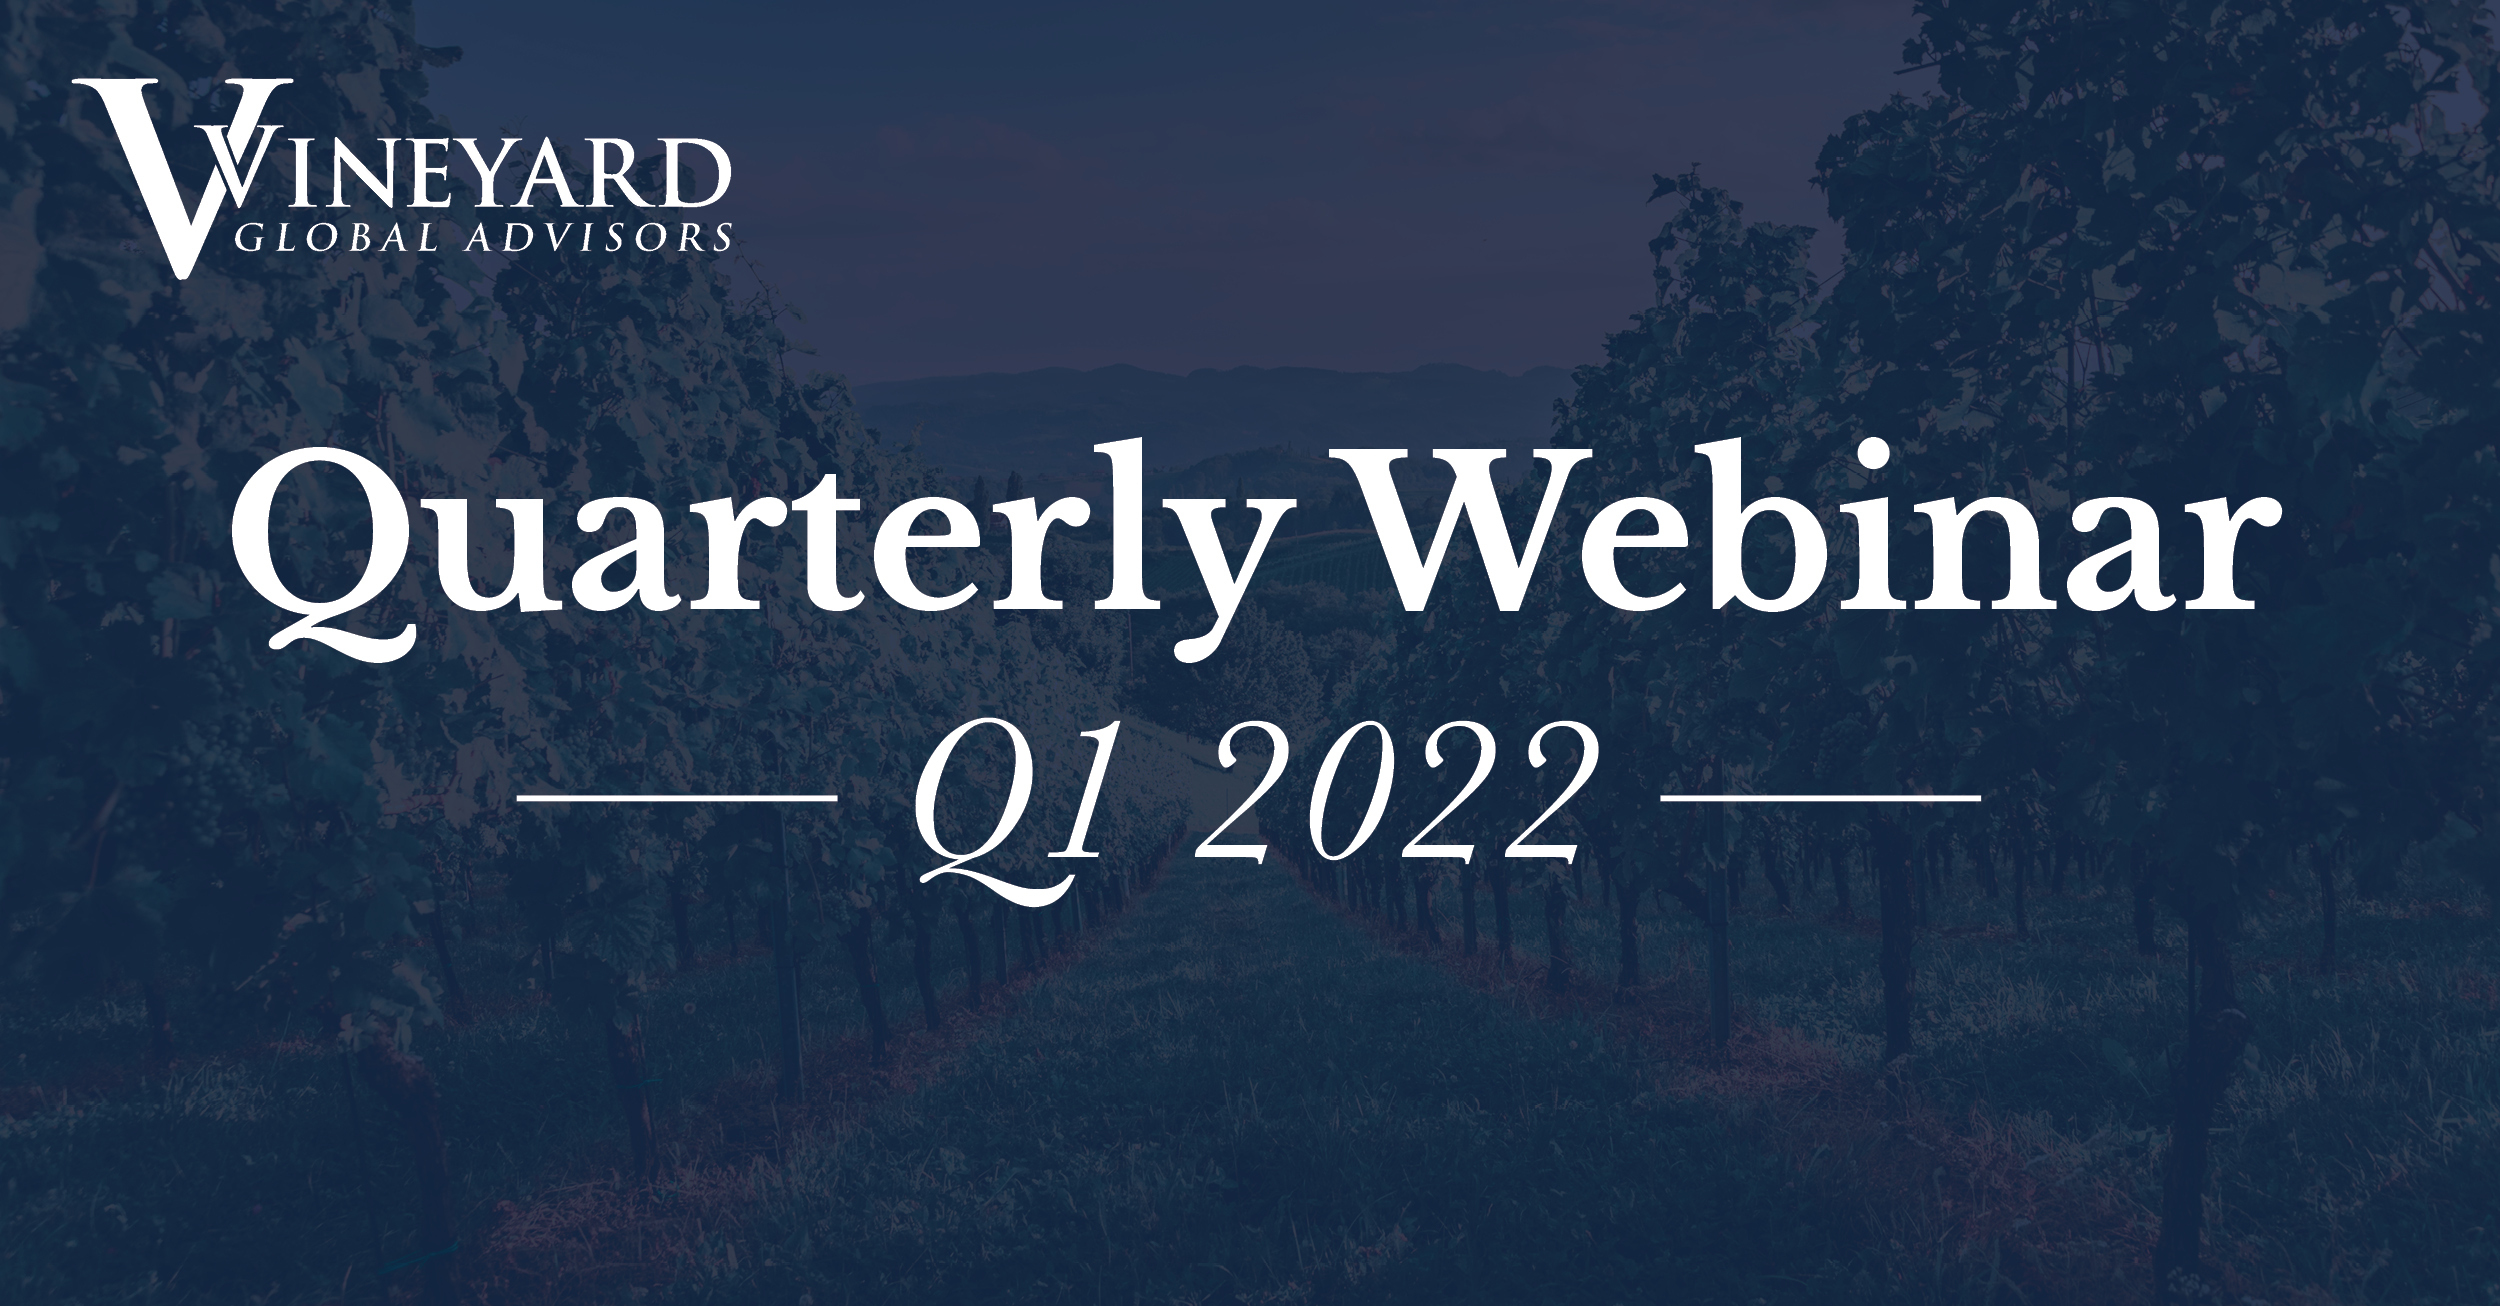 Vineyard_Q1 2022 Webinar